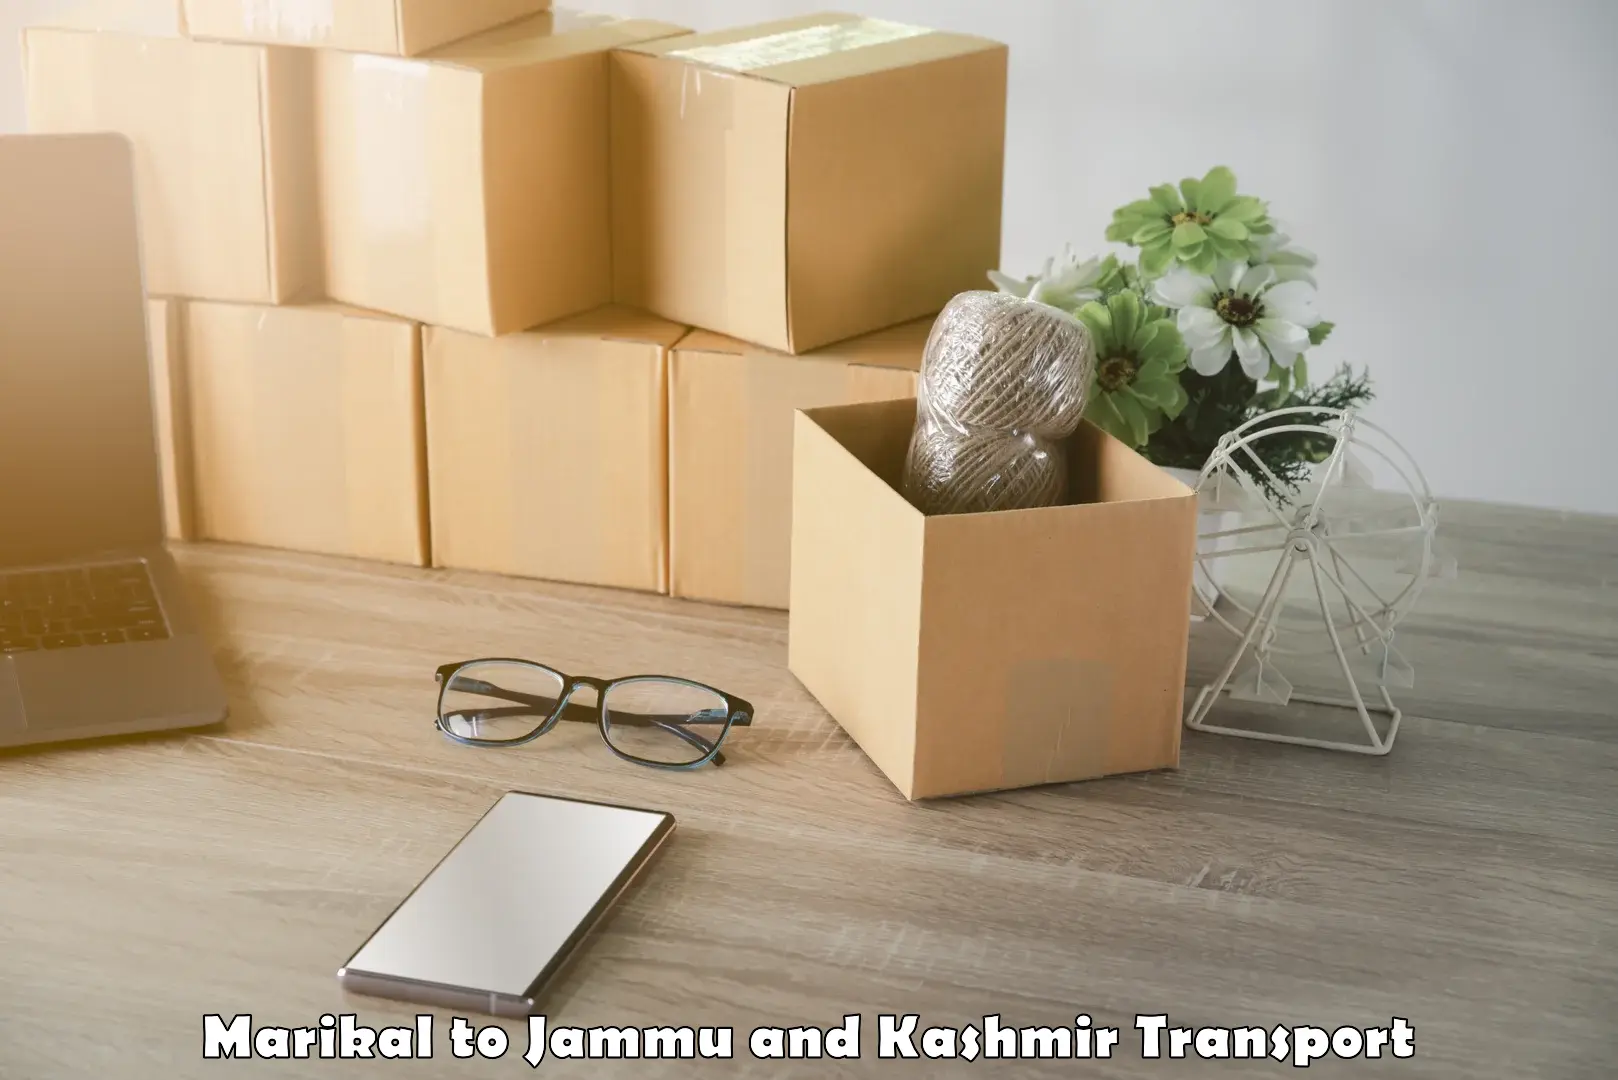 Daily transport service Marikal to Jammu and Kashmir